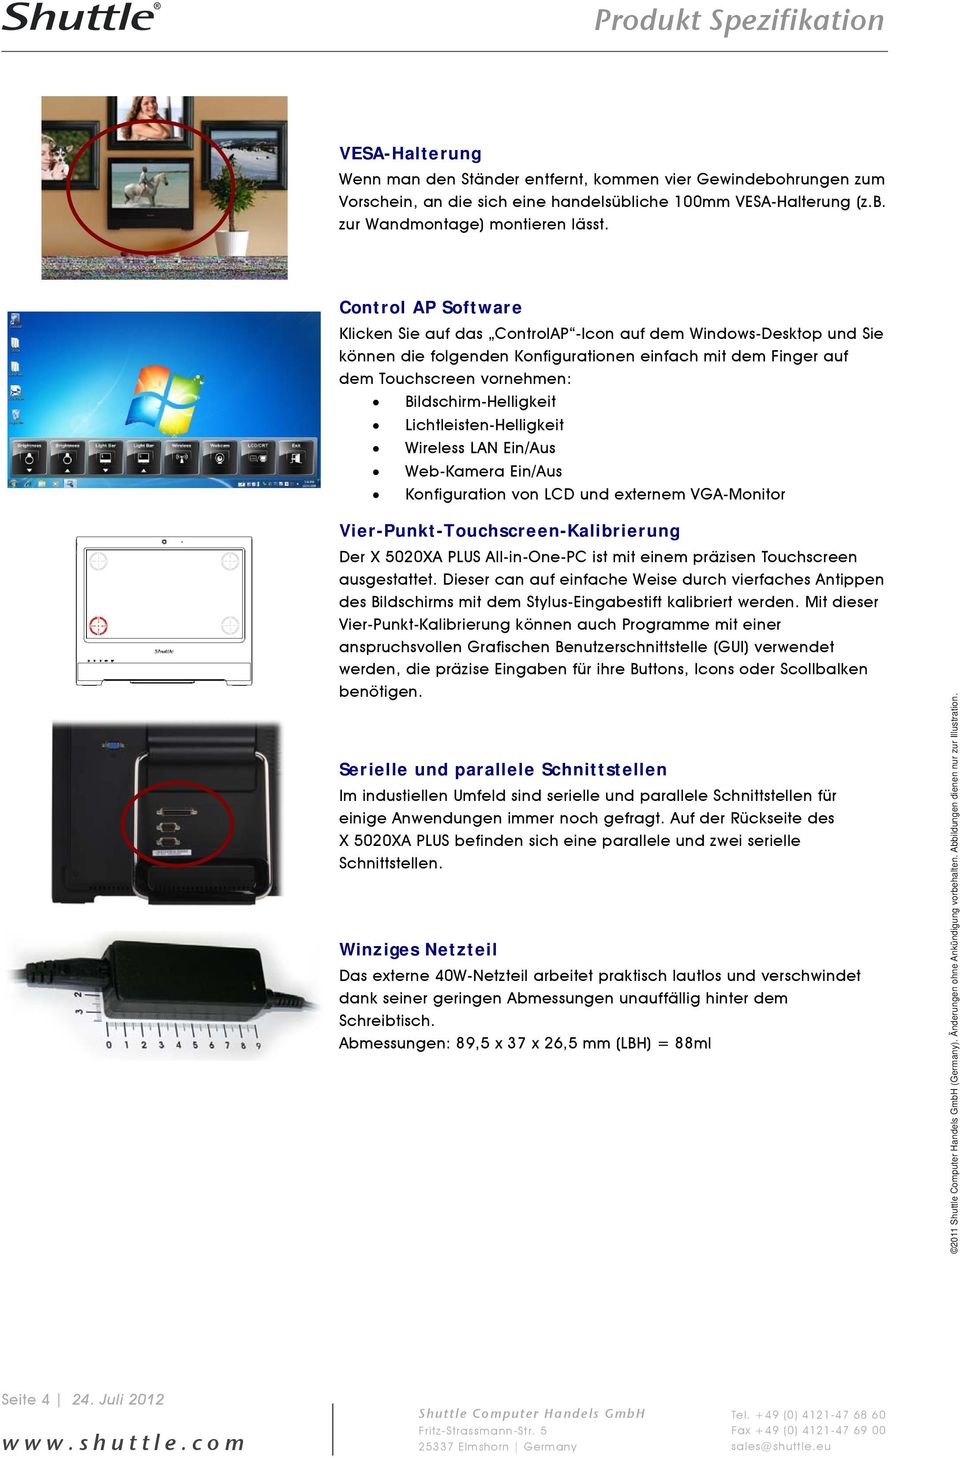 Bildschirm-Helligkeit Lichtleisten-Helligkeit Wireless LAN Ein/Aus Web-Kamera Ein/Aus Konfiguration von LCD und externem VGA-Monitor Vier-Punkt-Touchscreen-Kalibrierung Der X 5020XA PLUS